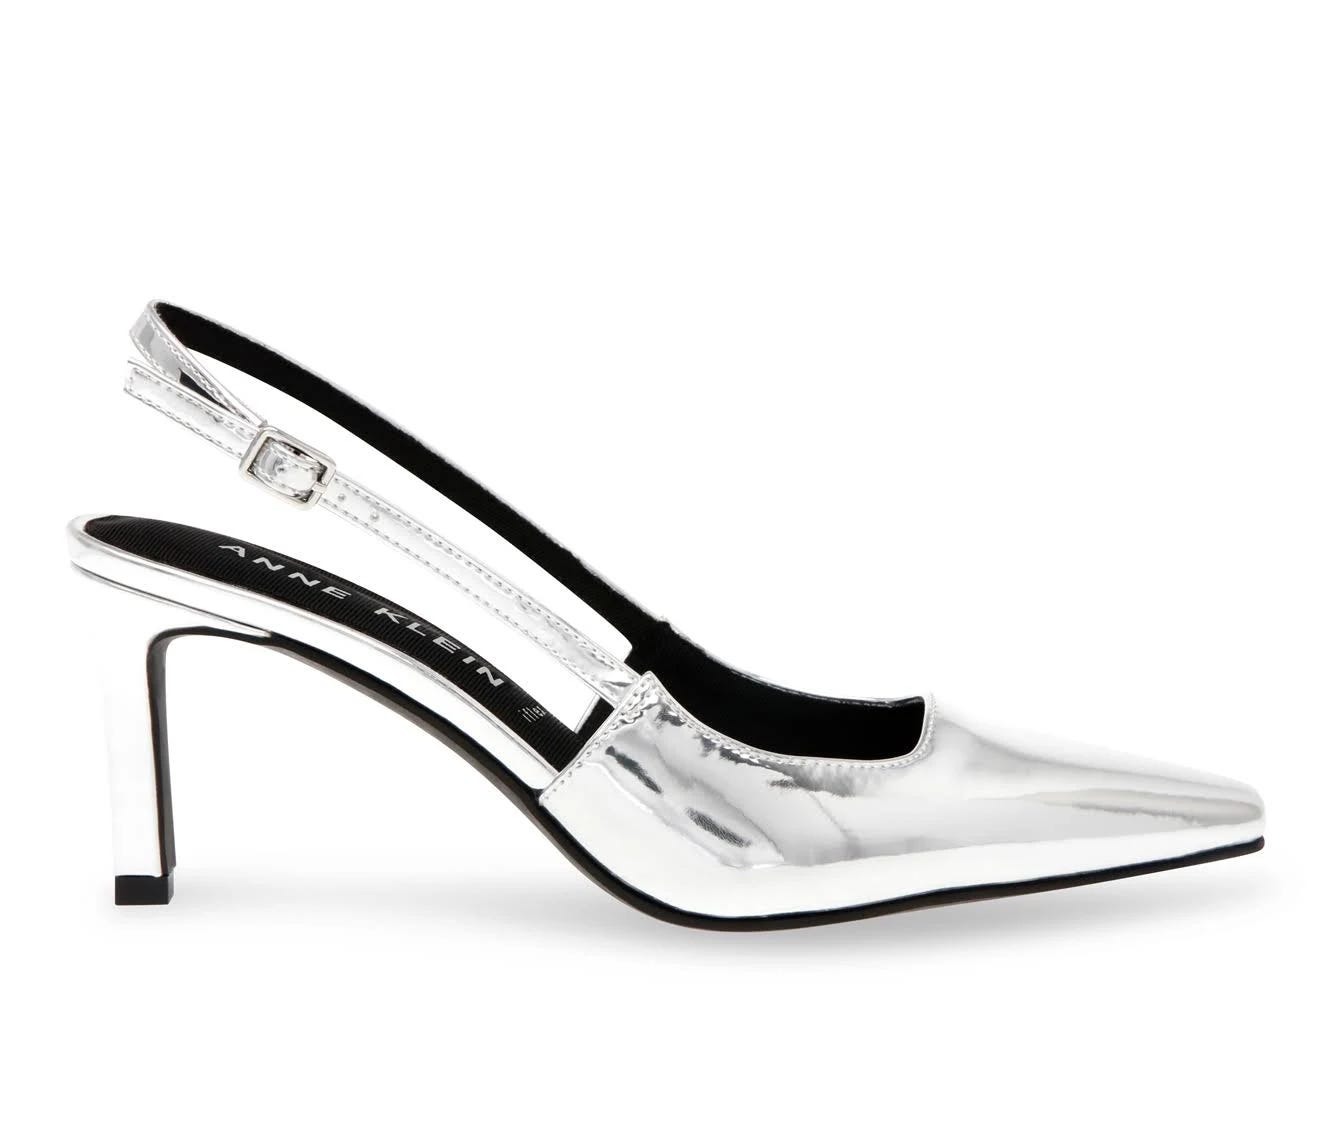 Slender Silver Slingback Pumps for Elegant Style | Image